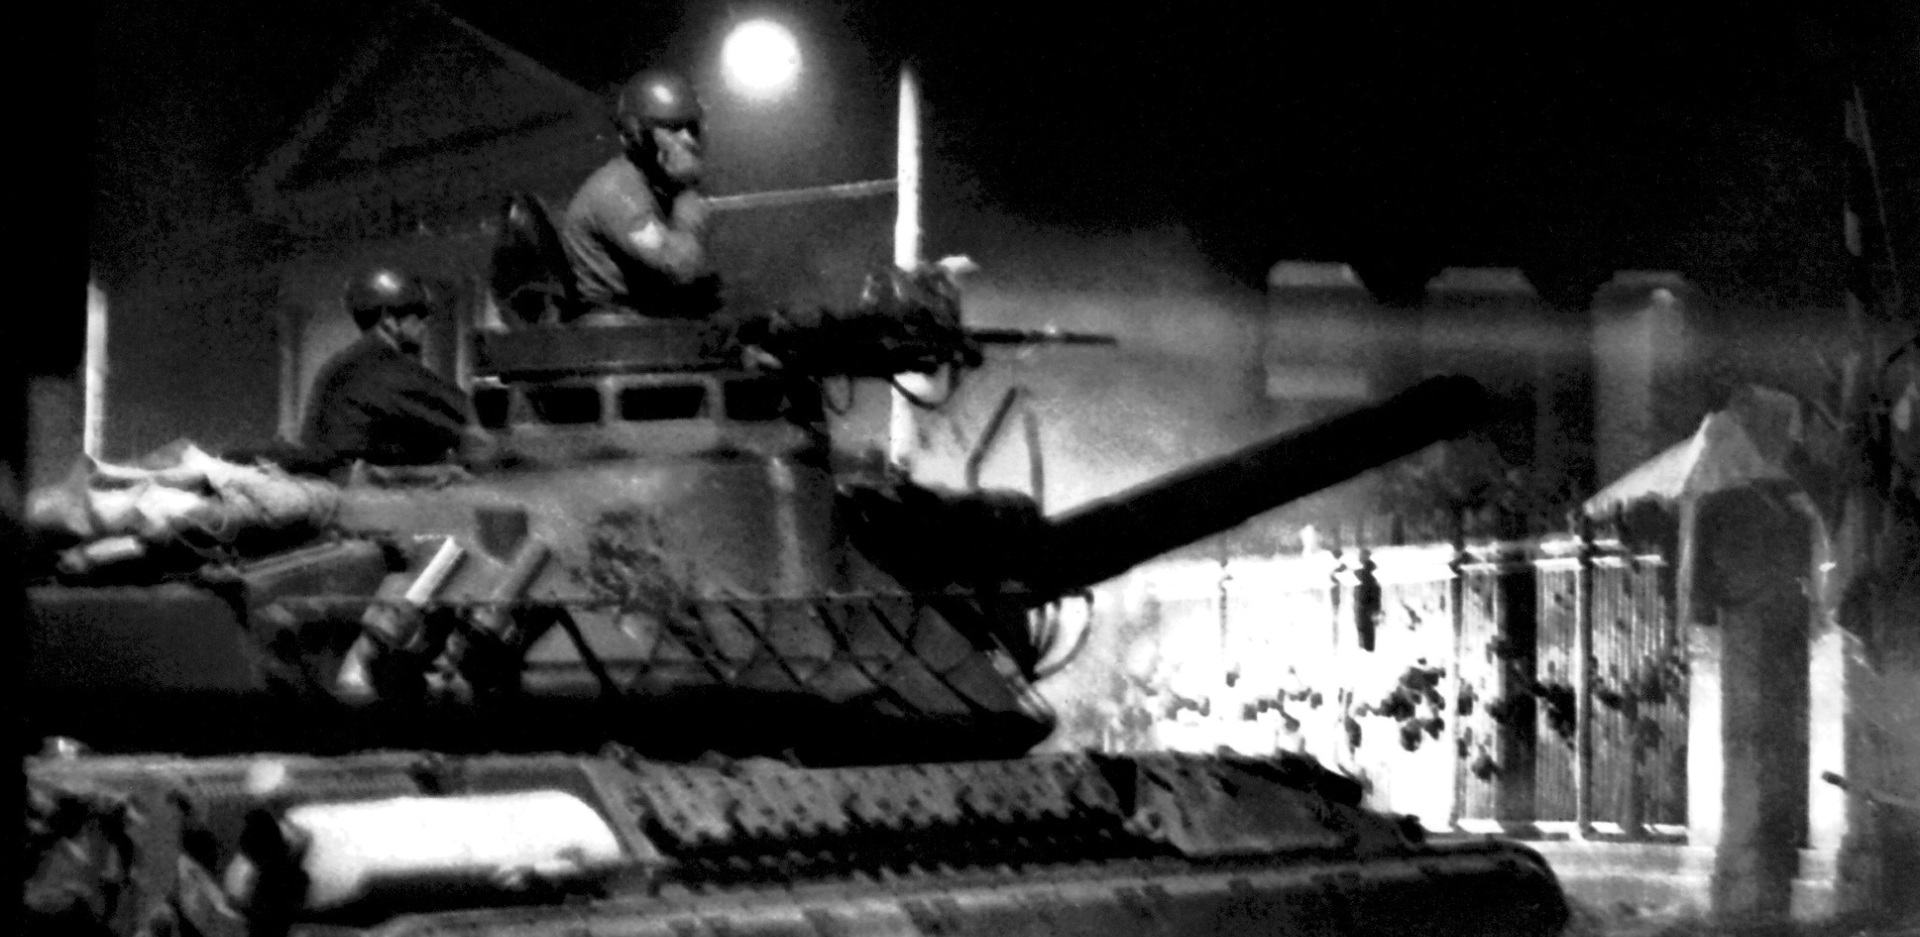 Εξέγερση του Πολυτεχνείου: 50 έτη συμπληρώνονται από τη νύχτα της 17ης Νοεμβρίου 1973 - Το χρονικό της αρχής της κατάρρευσης του χουντικού καθεστώτος σε εικόνες